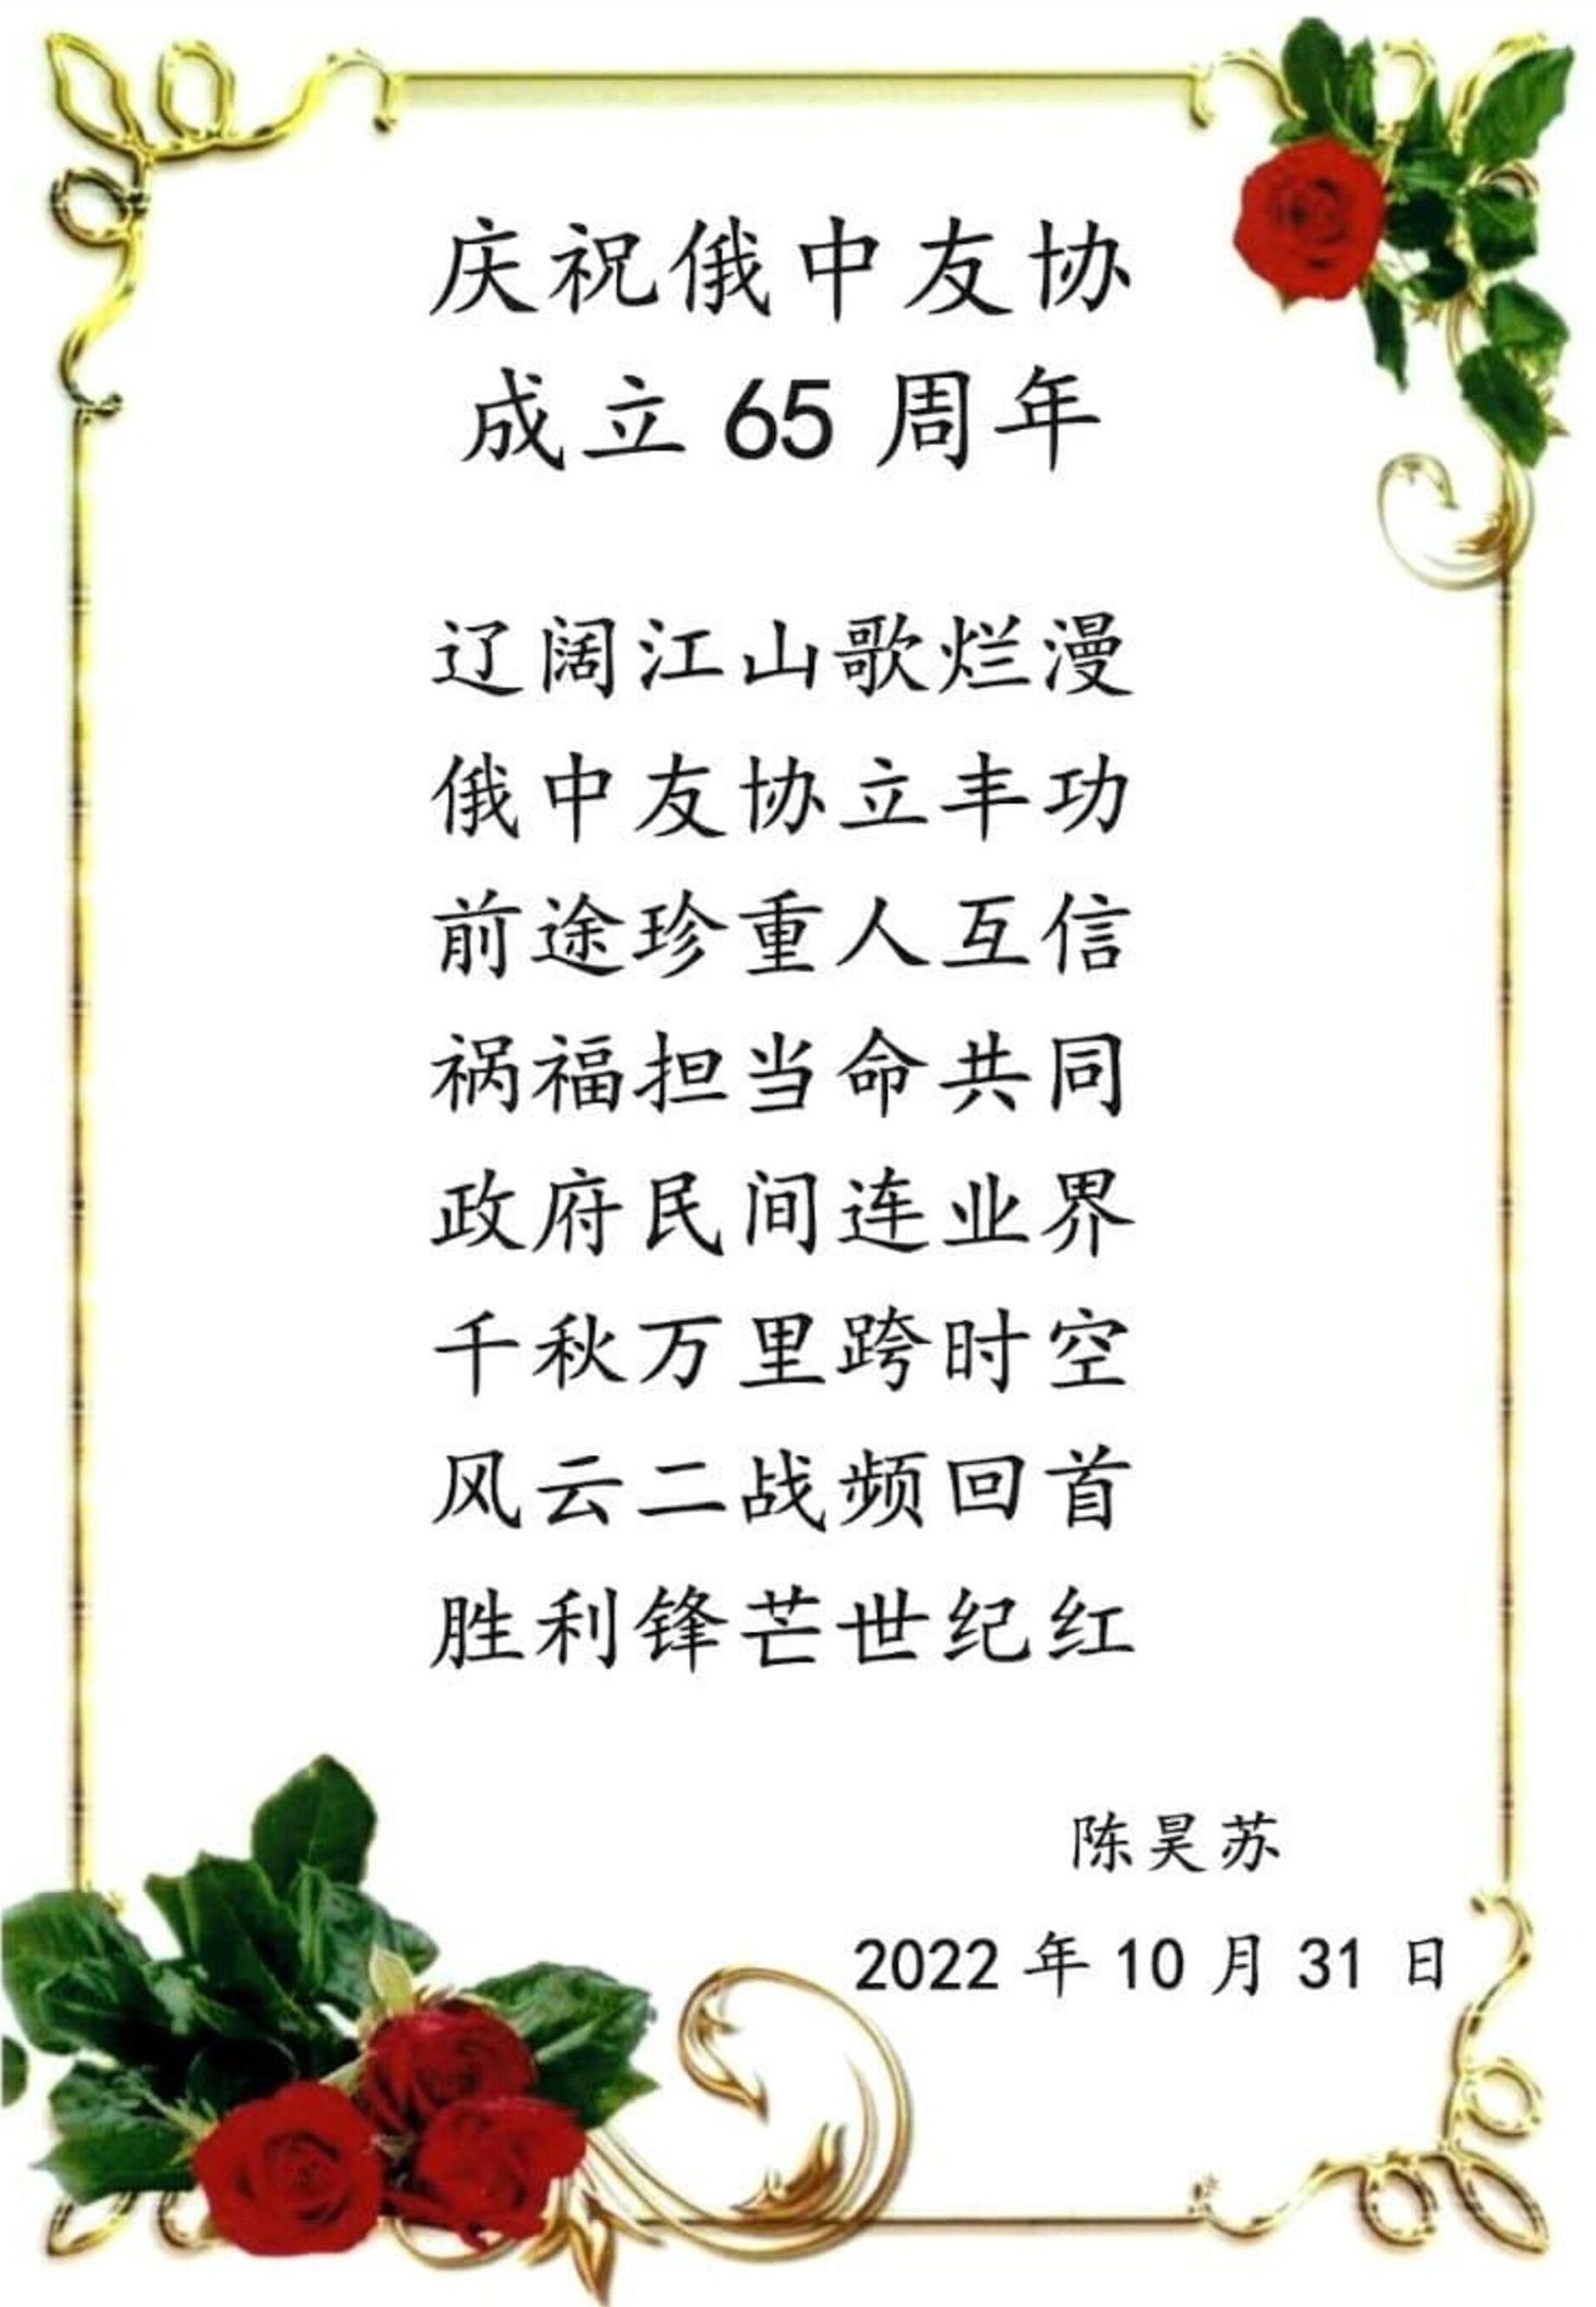 陈昊苏的诗词贺卡 - 俄罗斯卫星通讯社, 1920, 04.11.2022